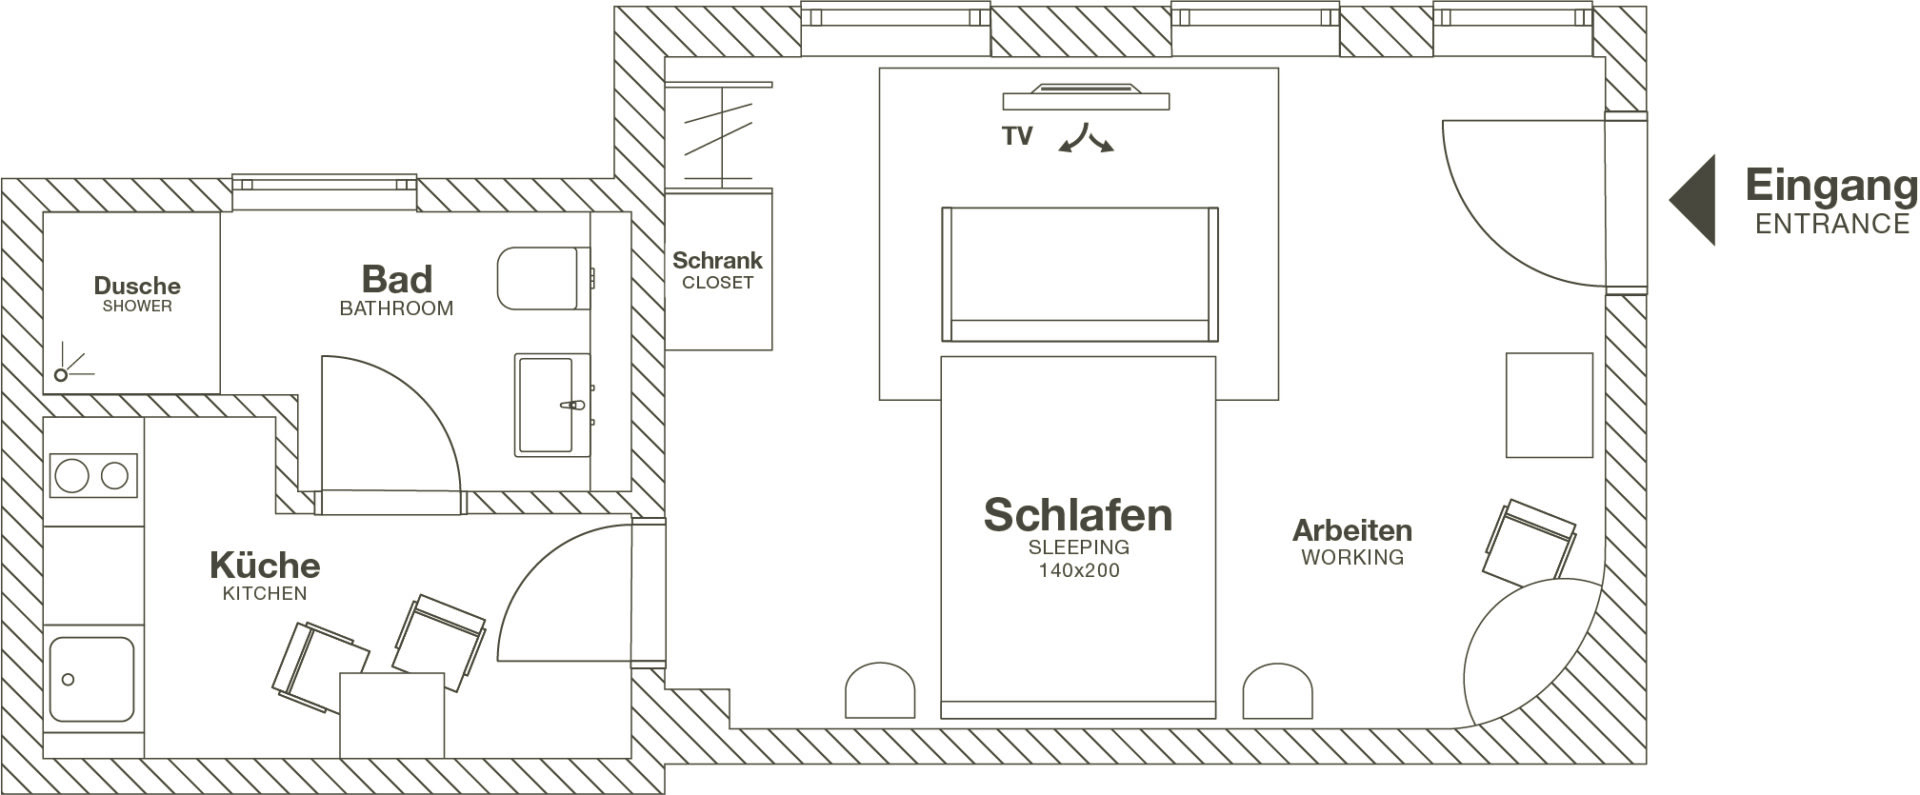 Wolfsburg - ipartment - Design Serviced Apartments - Wohnen auf Zeit